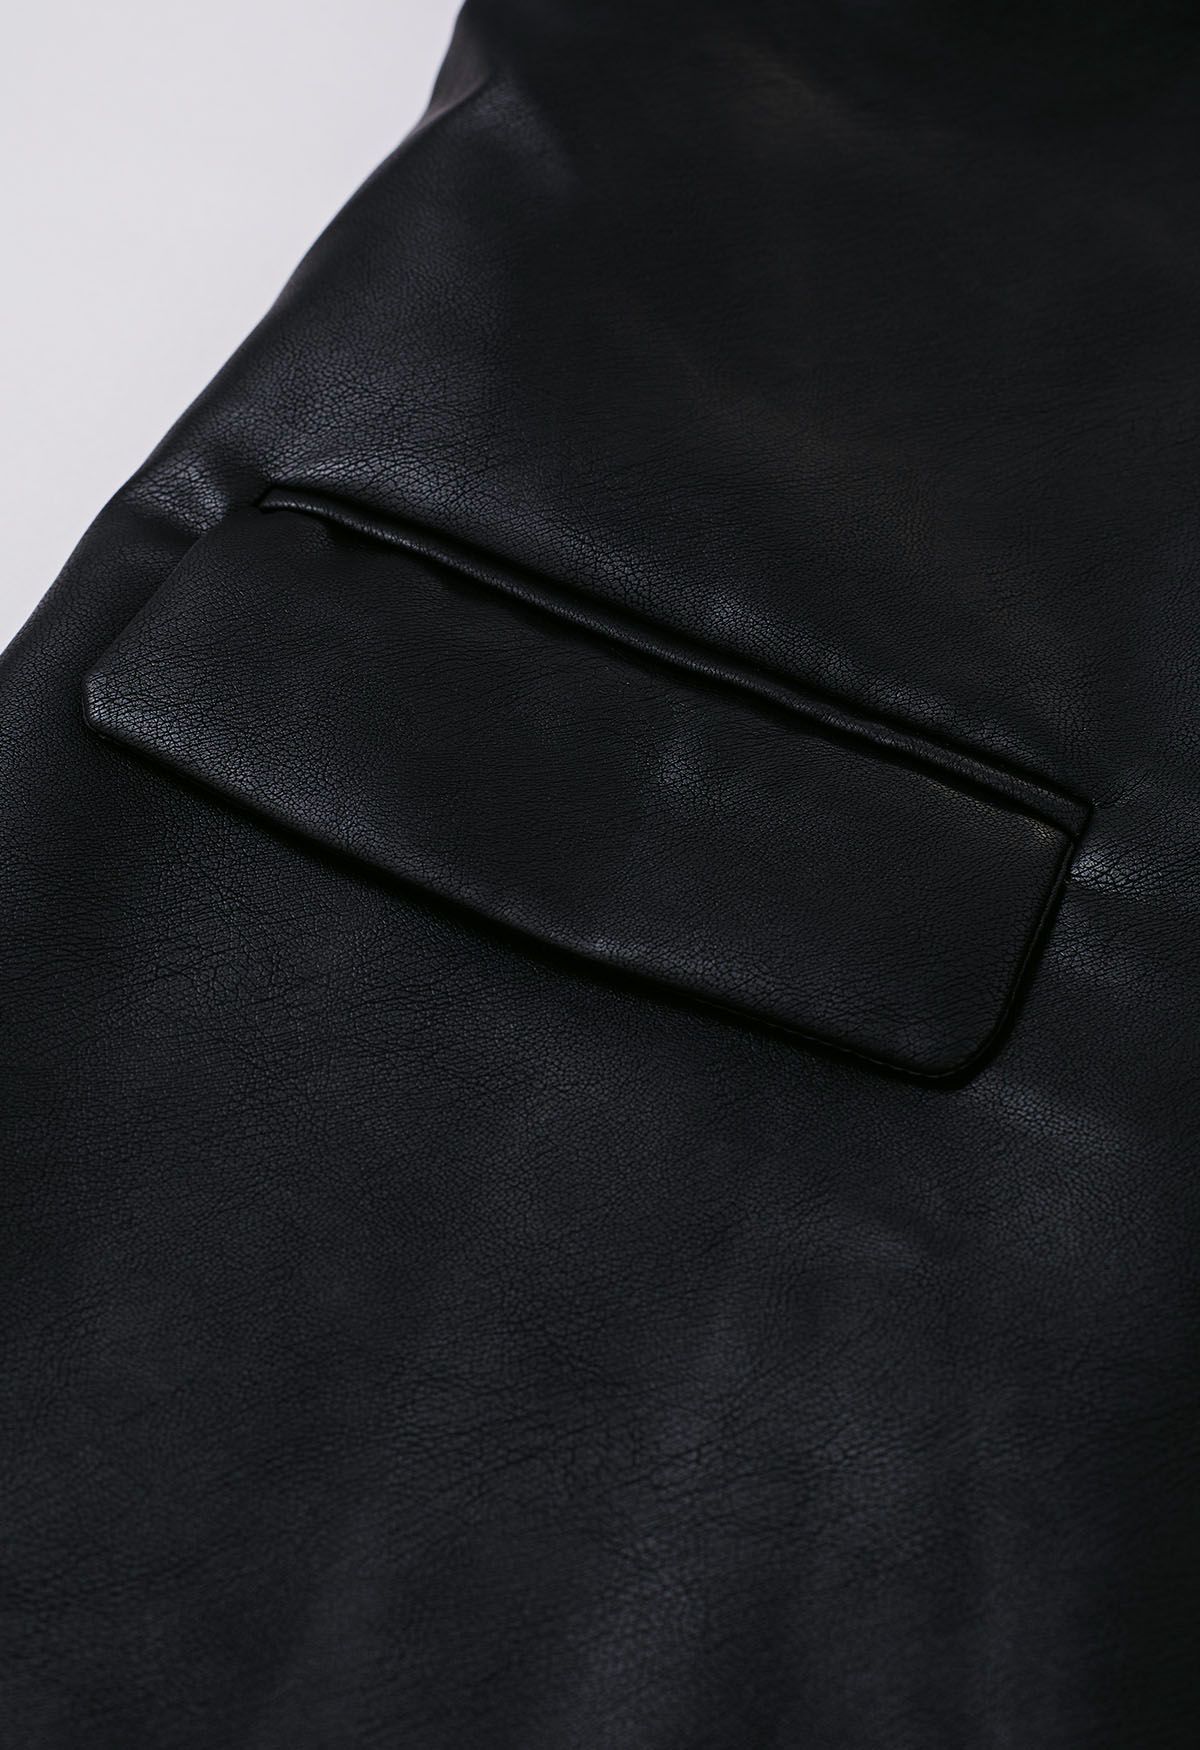 Chaqueta de cuero sintético sin cuello Simplicity en negro